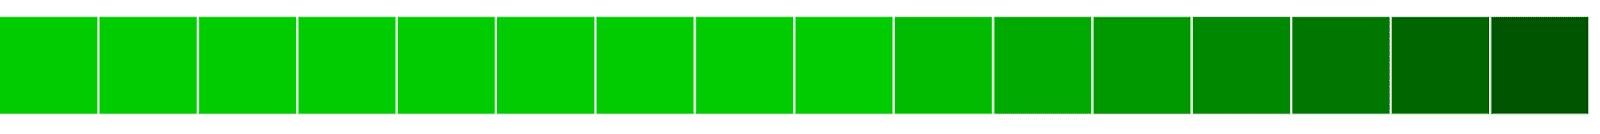 밝은 색상에서 어두운 색으로 변하는 녹색 블록의 가로 정렬